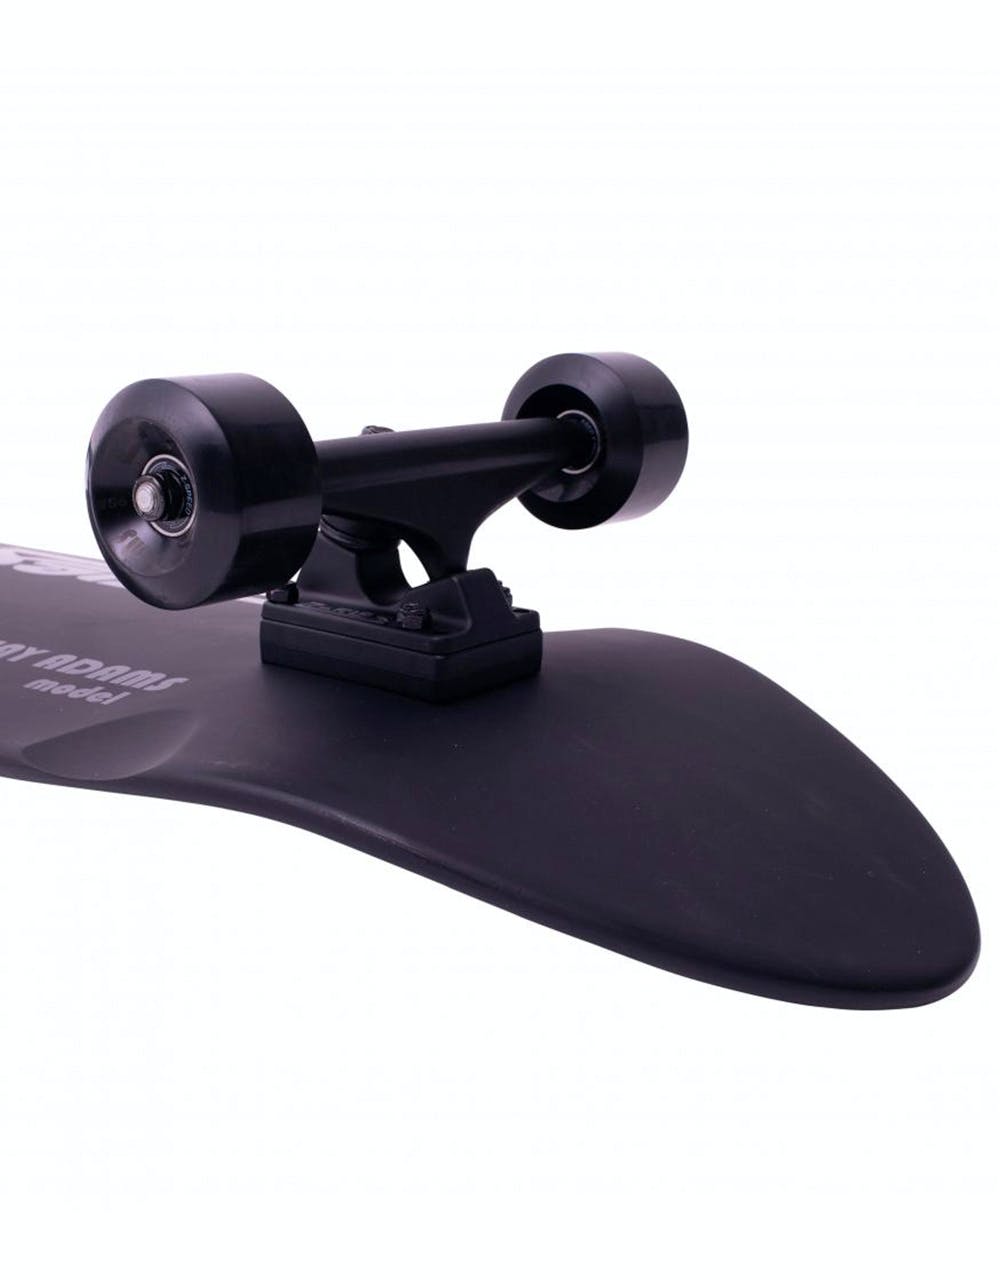 Z Flex Shadow Lurker Pool Cruiser Skateboard - 9.5" x 33"